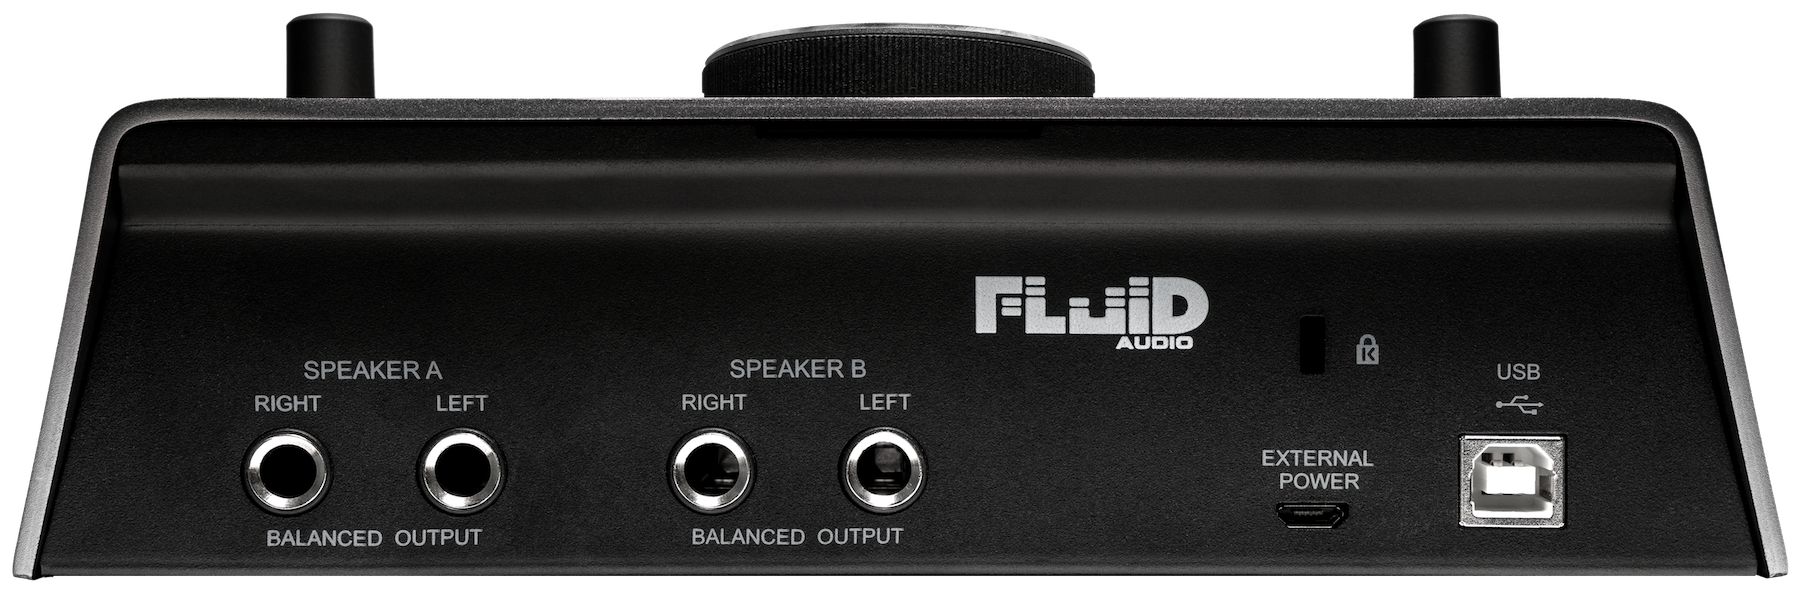 Fluid Audio SRI-2 rear view